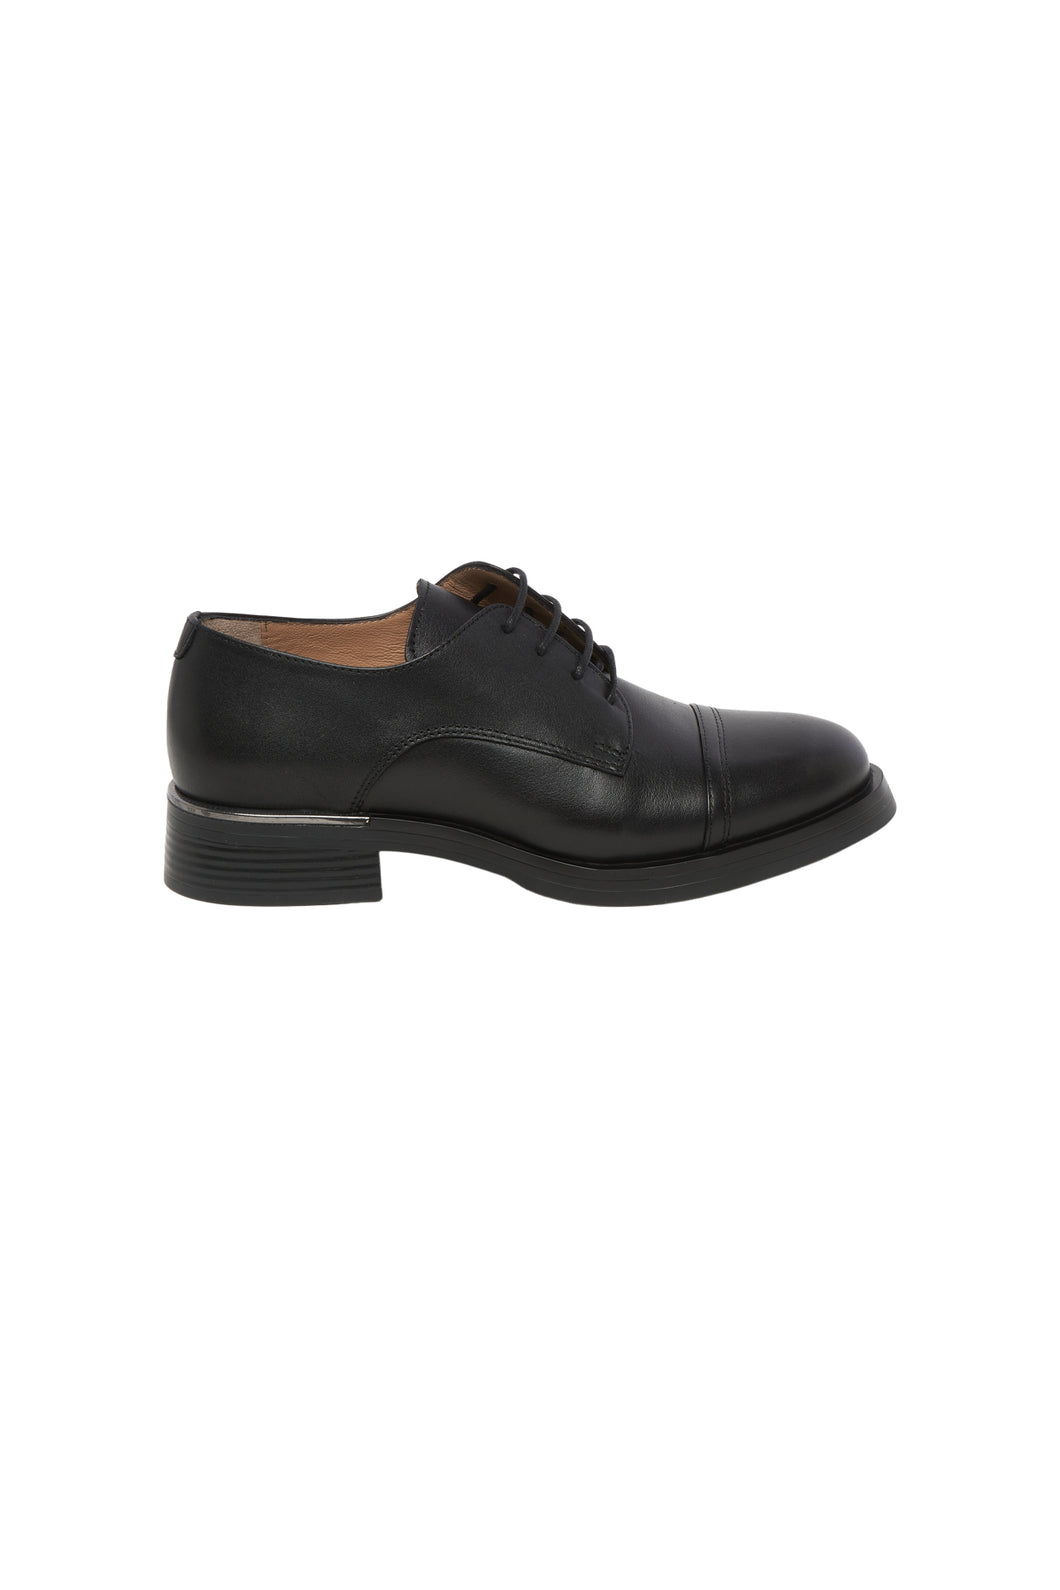 Black Classic C177 Shoe